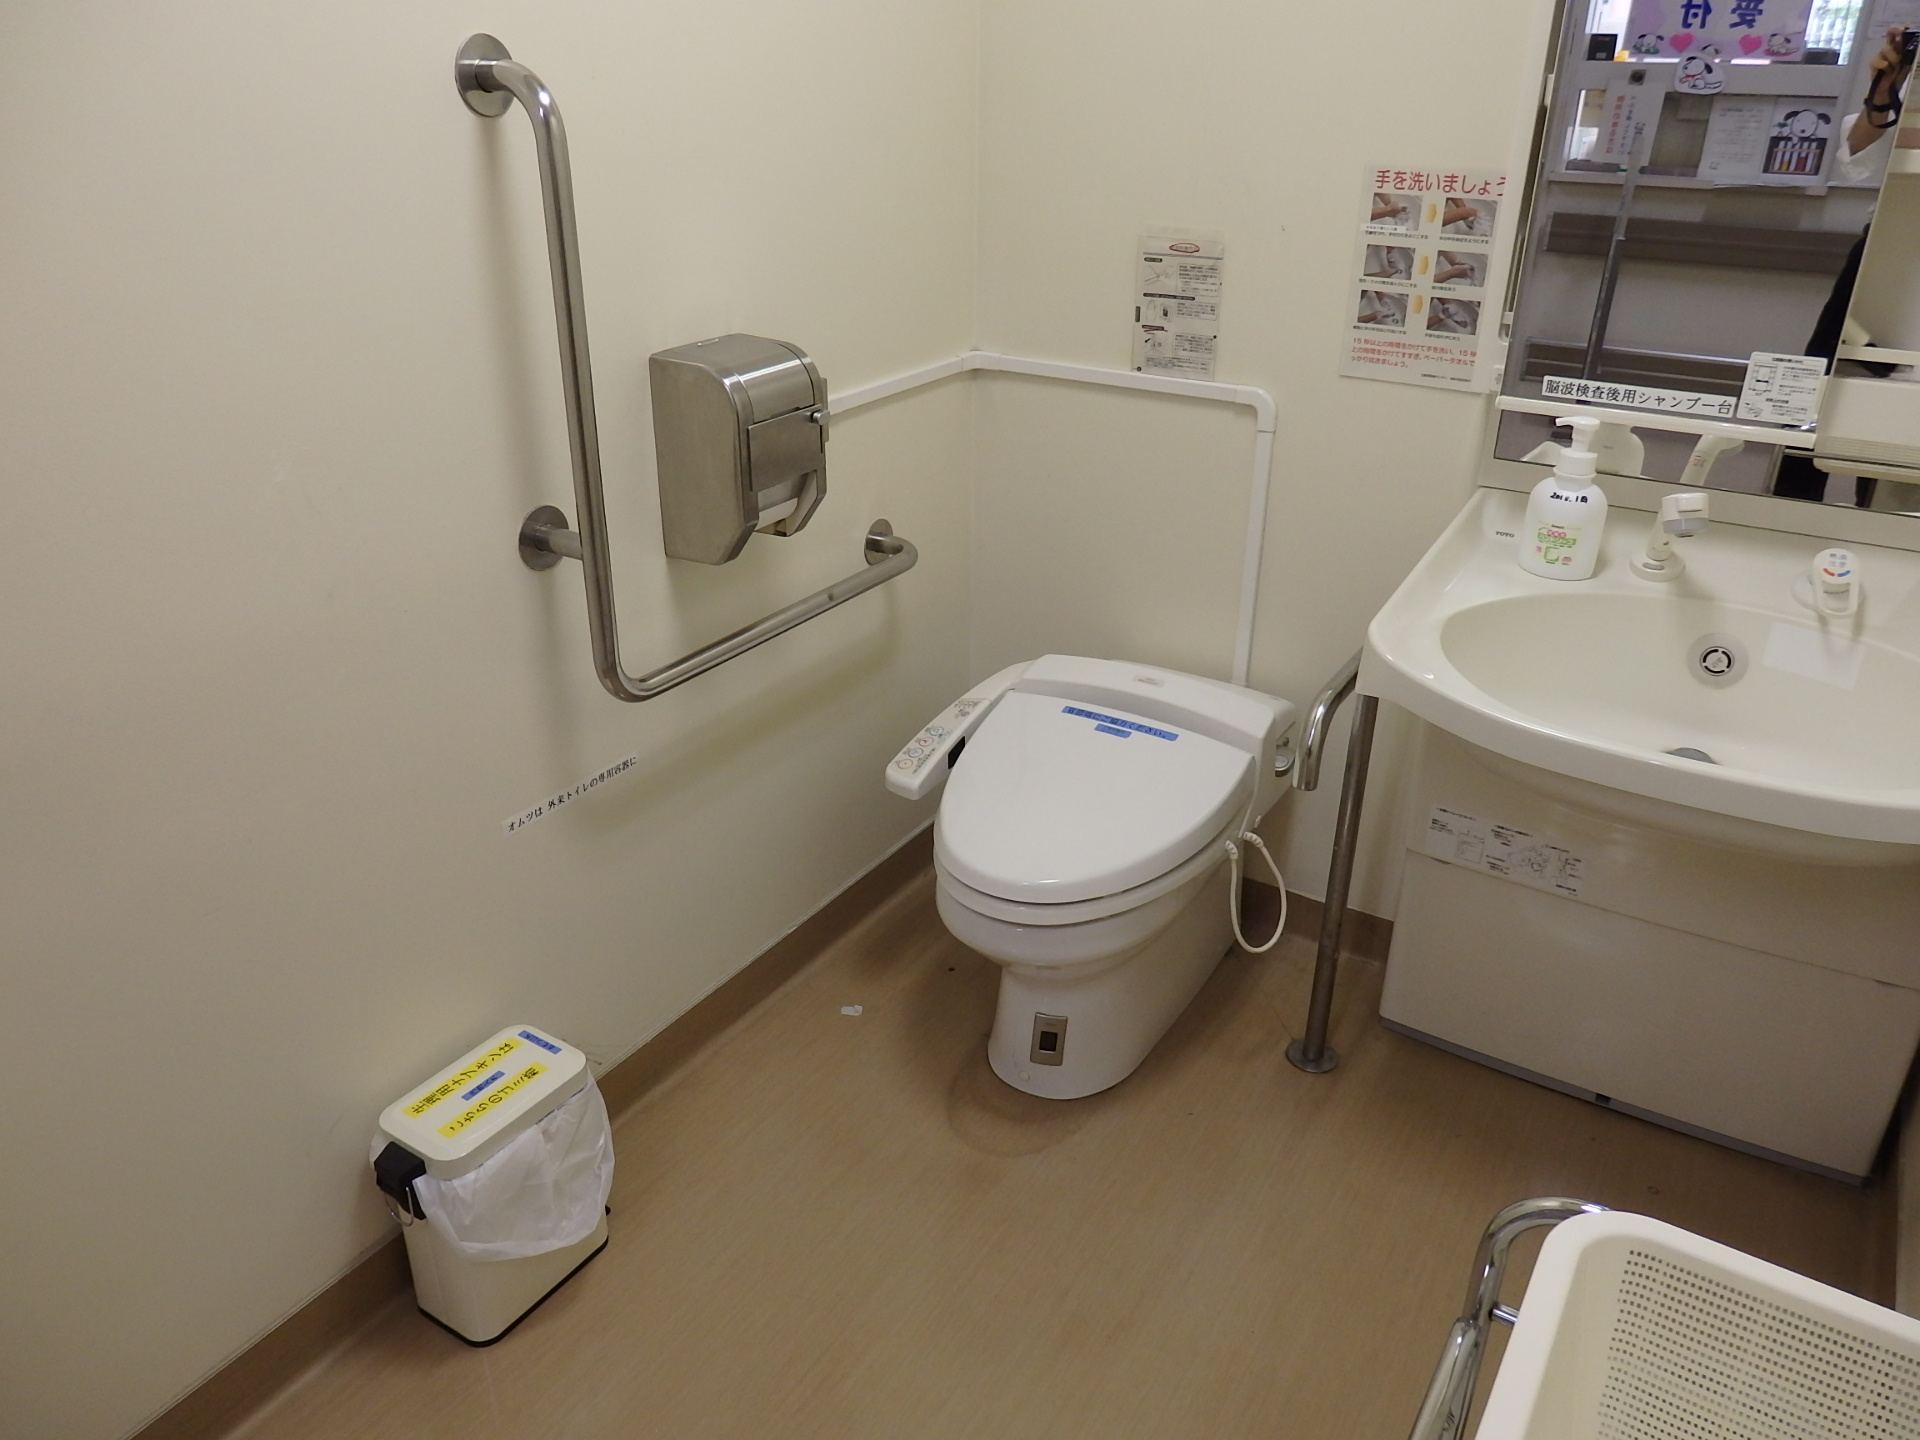 東京都立北療育医療センター 車イスで行けるトイレ情報サイト Yorisou ヨリソウ 利用者の方へ安心と優しさを届ける本物の情報を